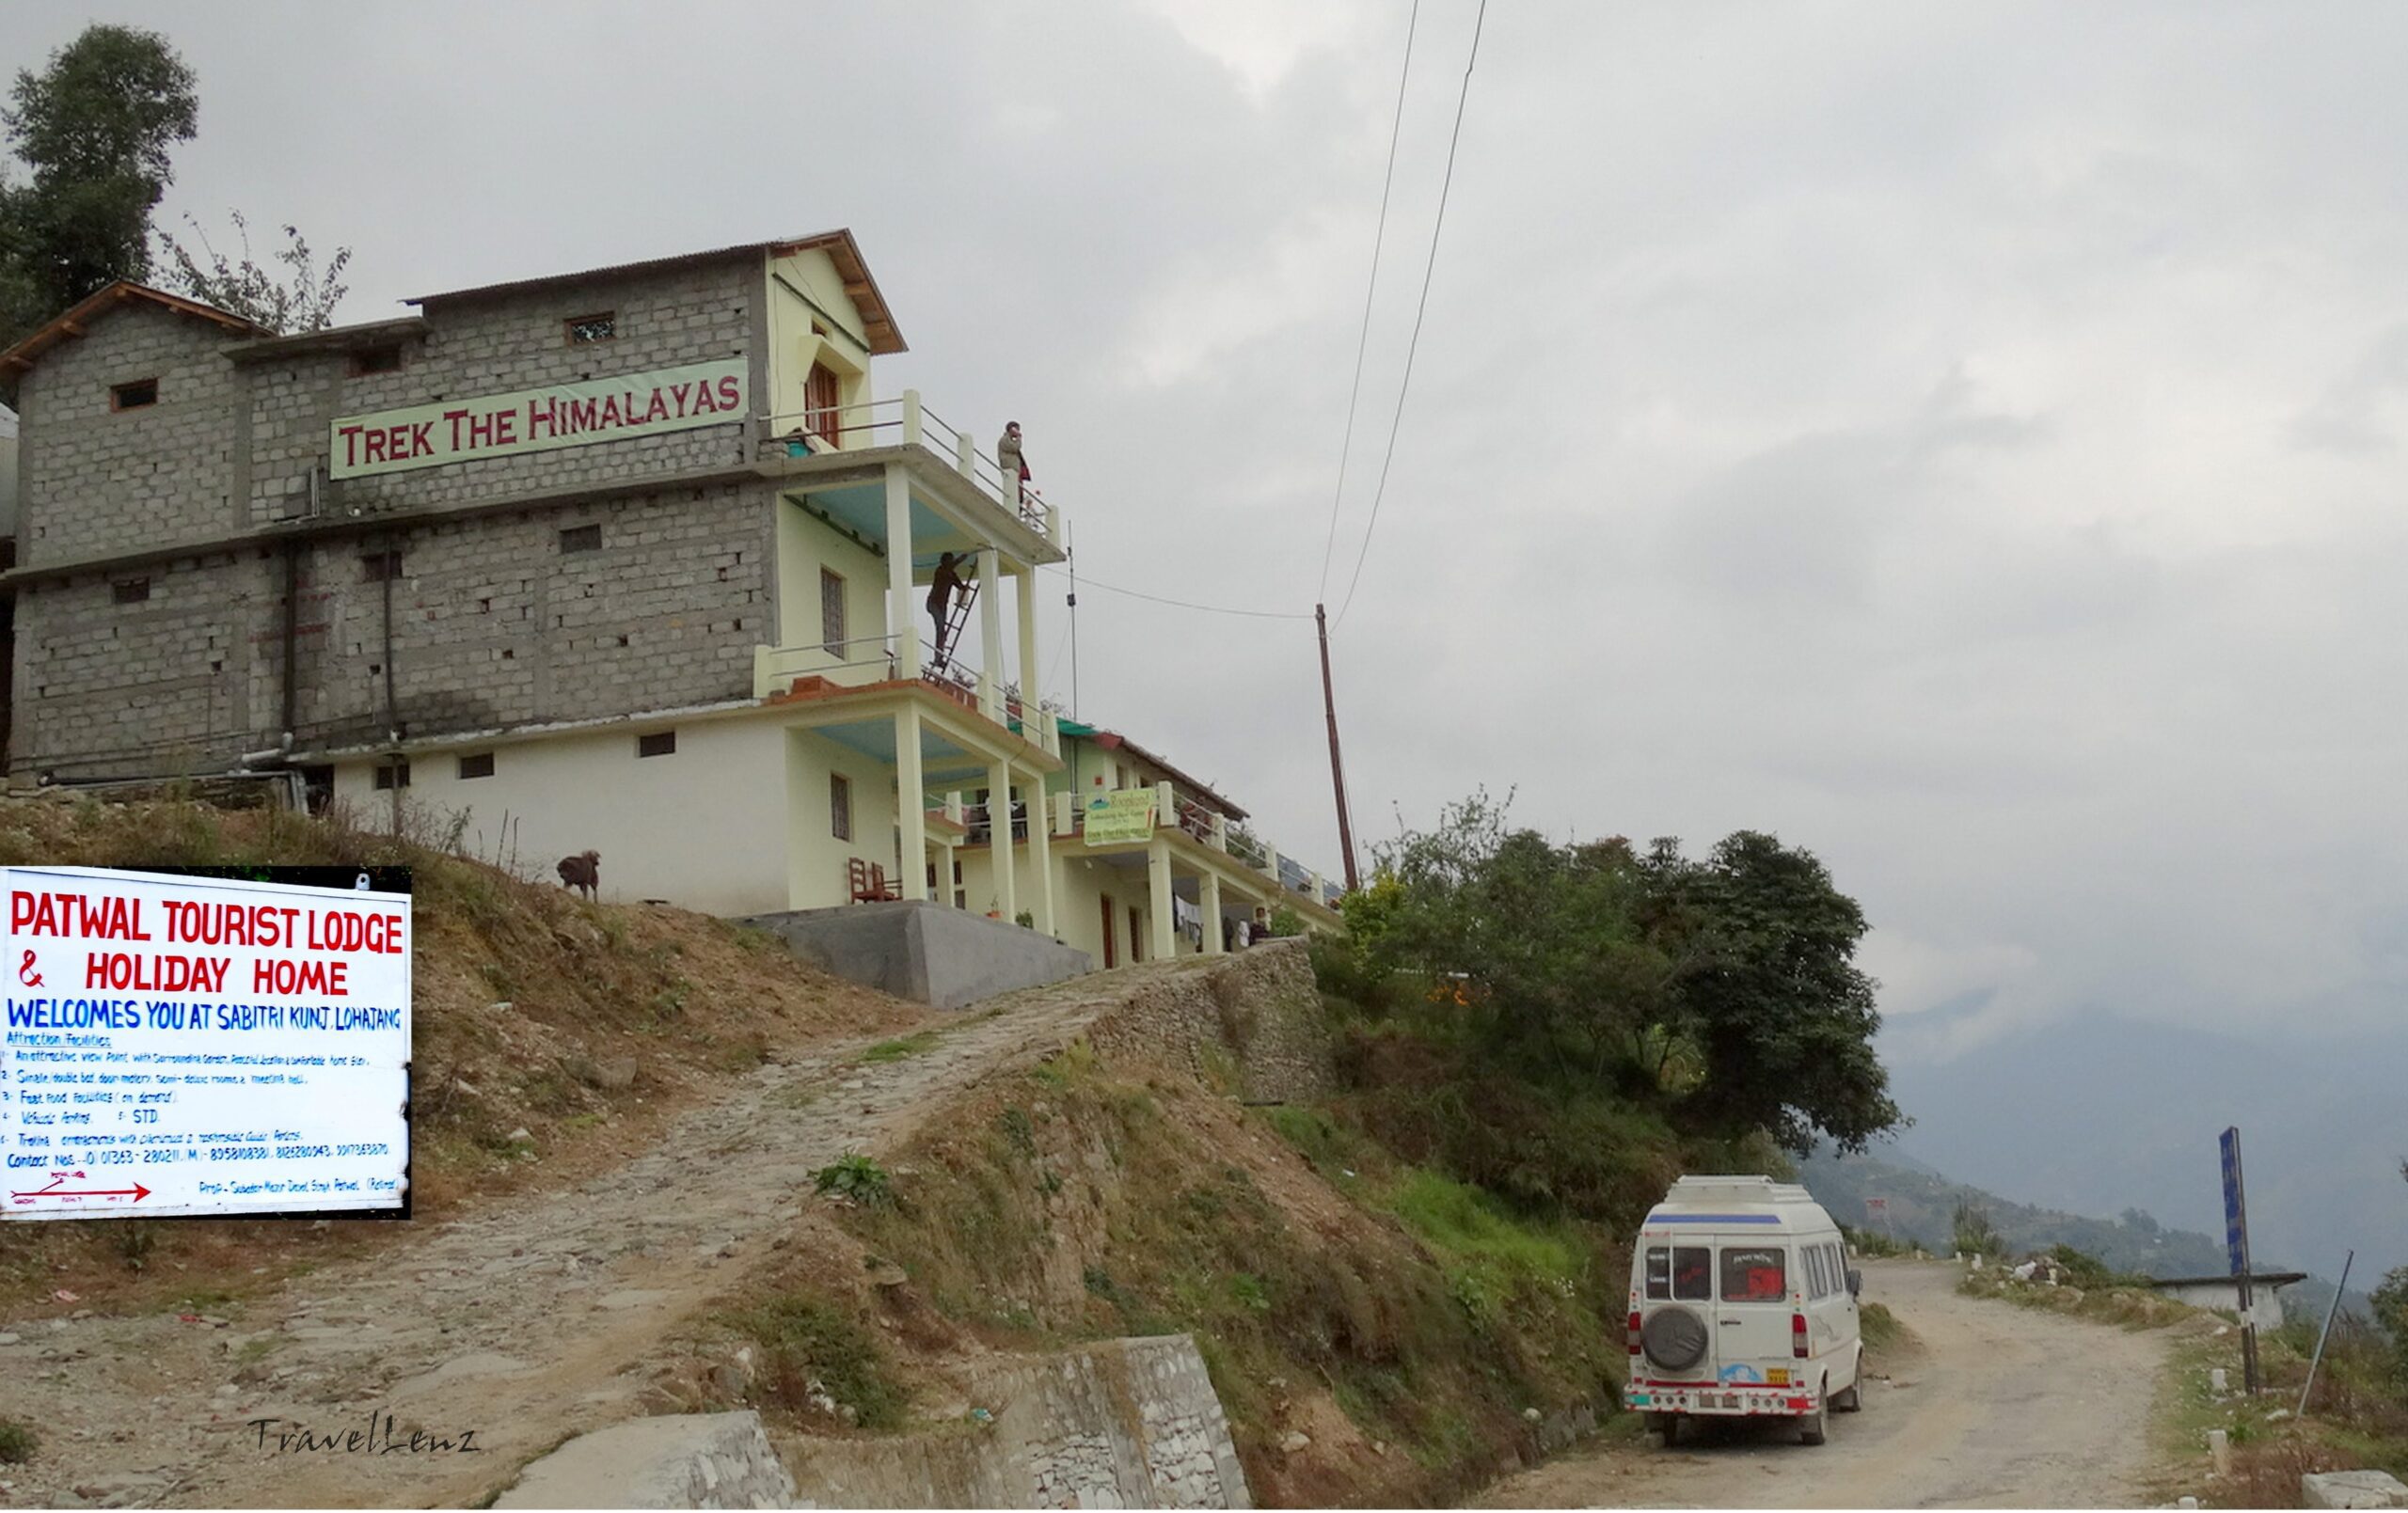 Trek the Himalayas base camp building at Lohajung